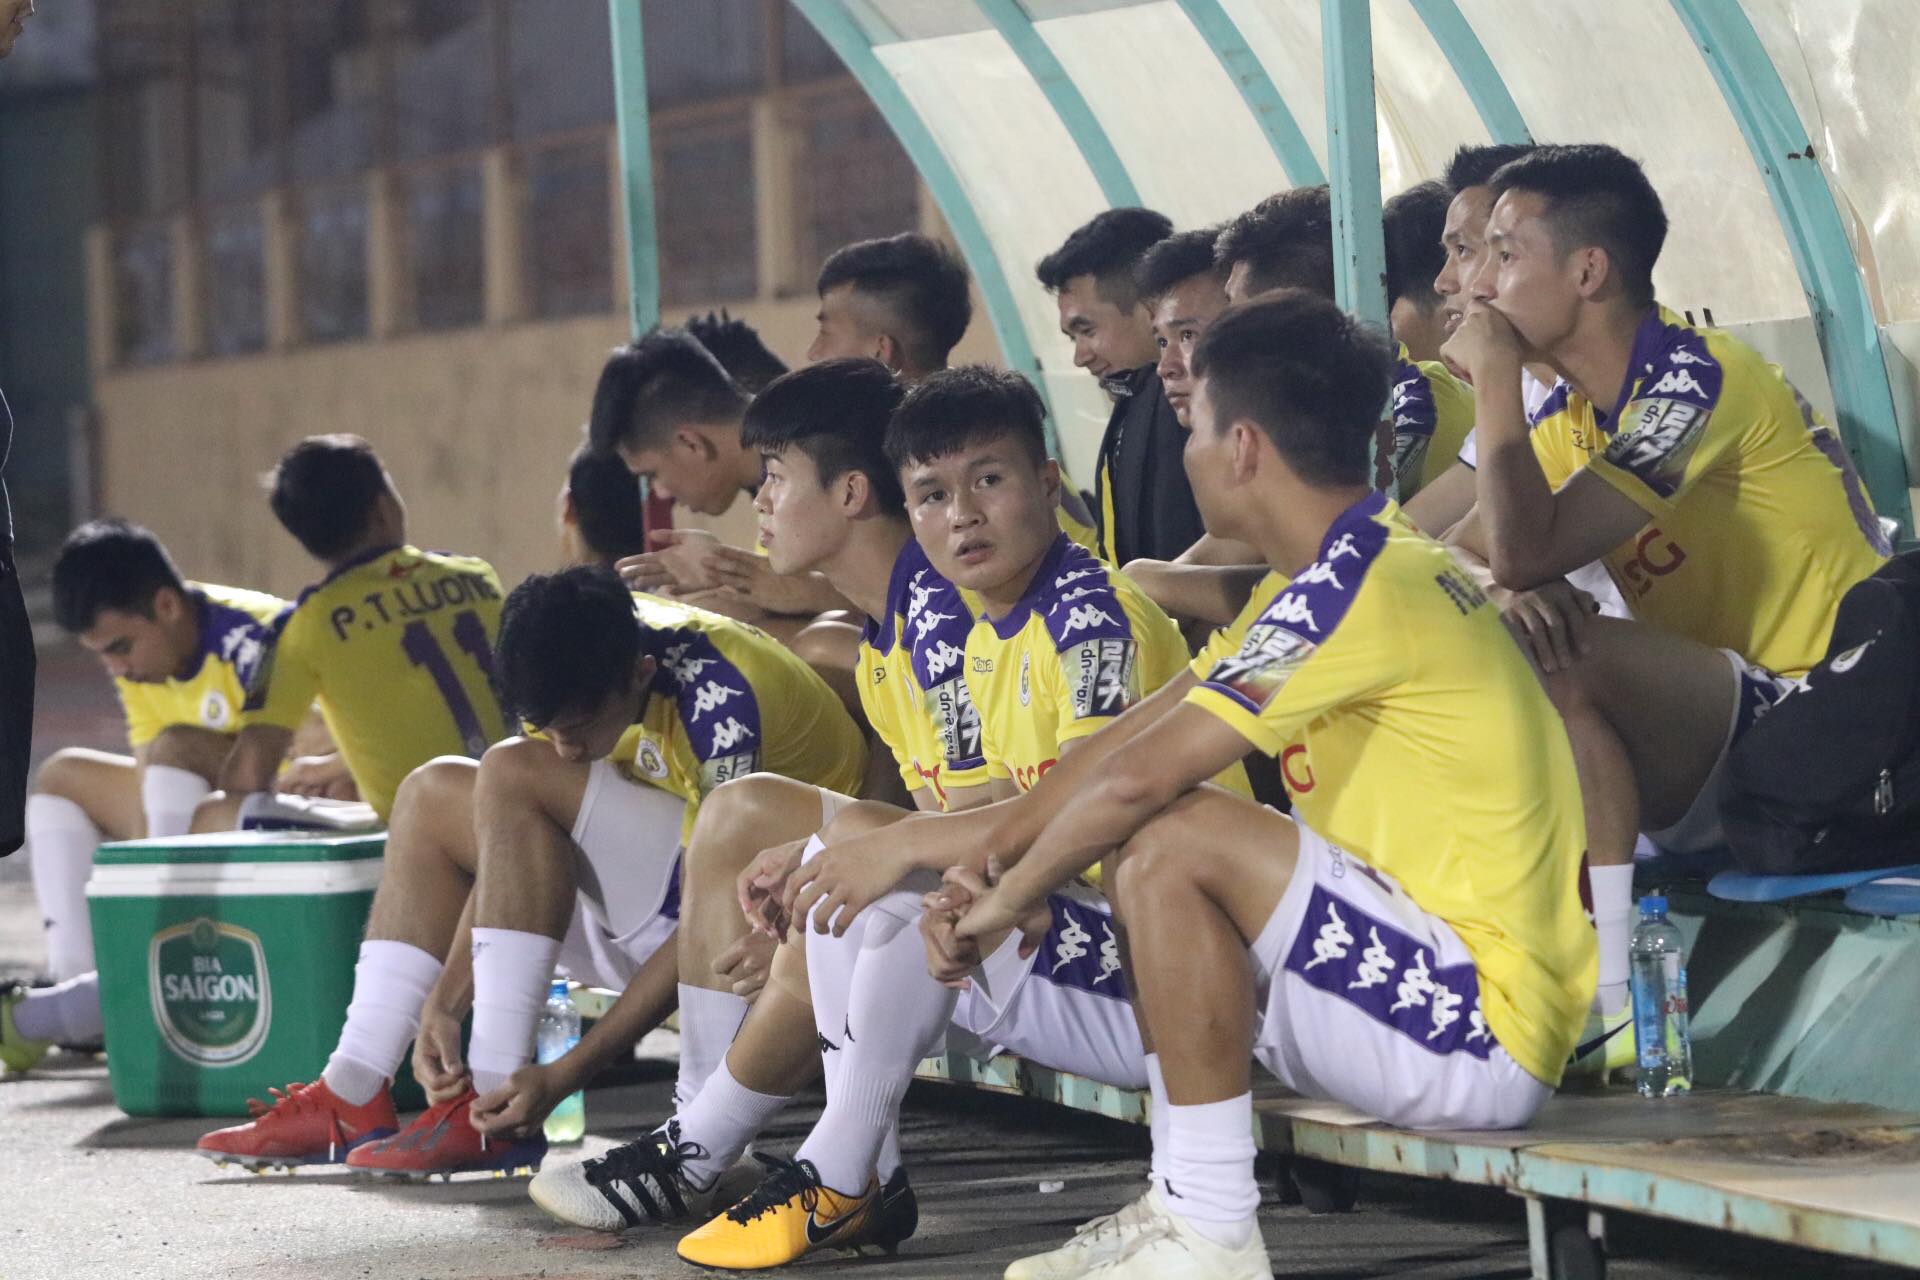 Kết quả Khánh Hòa vs Hà Nội FC (0-0): Kém duyên, Hà Nội FC đánh mất ngôi đầu